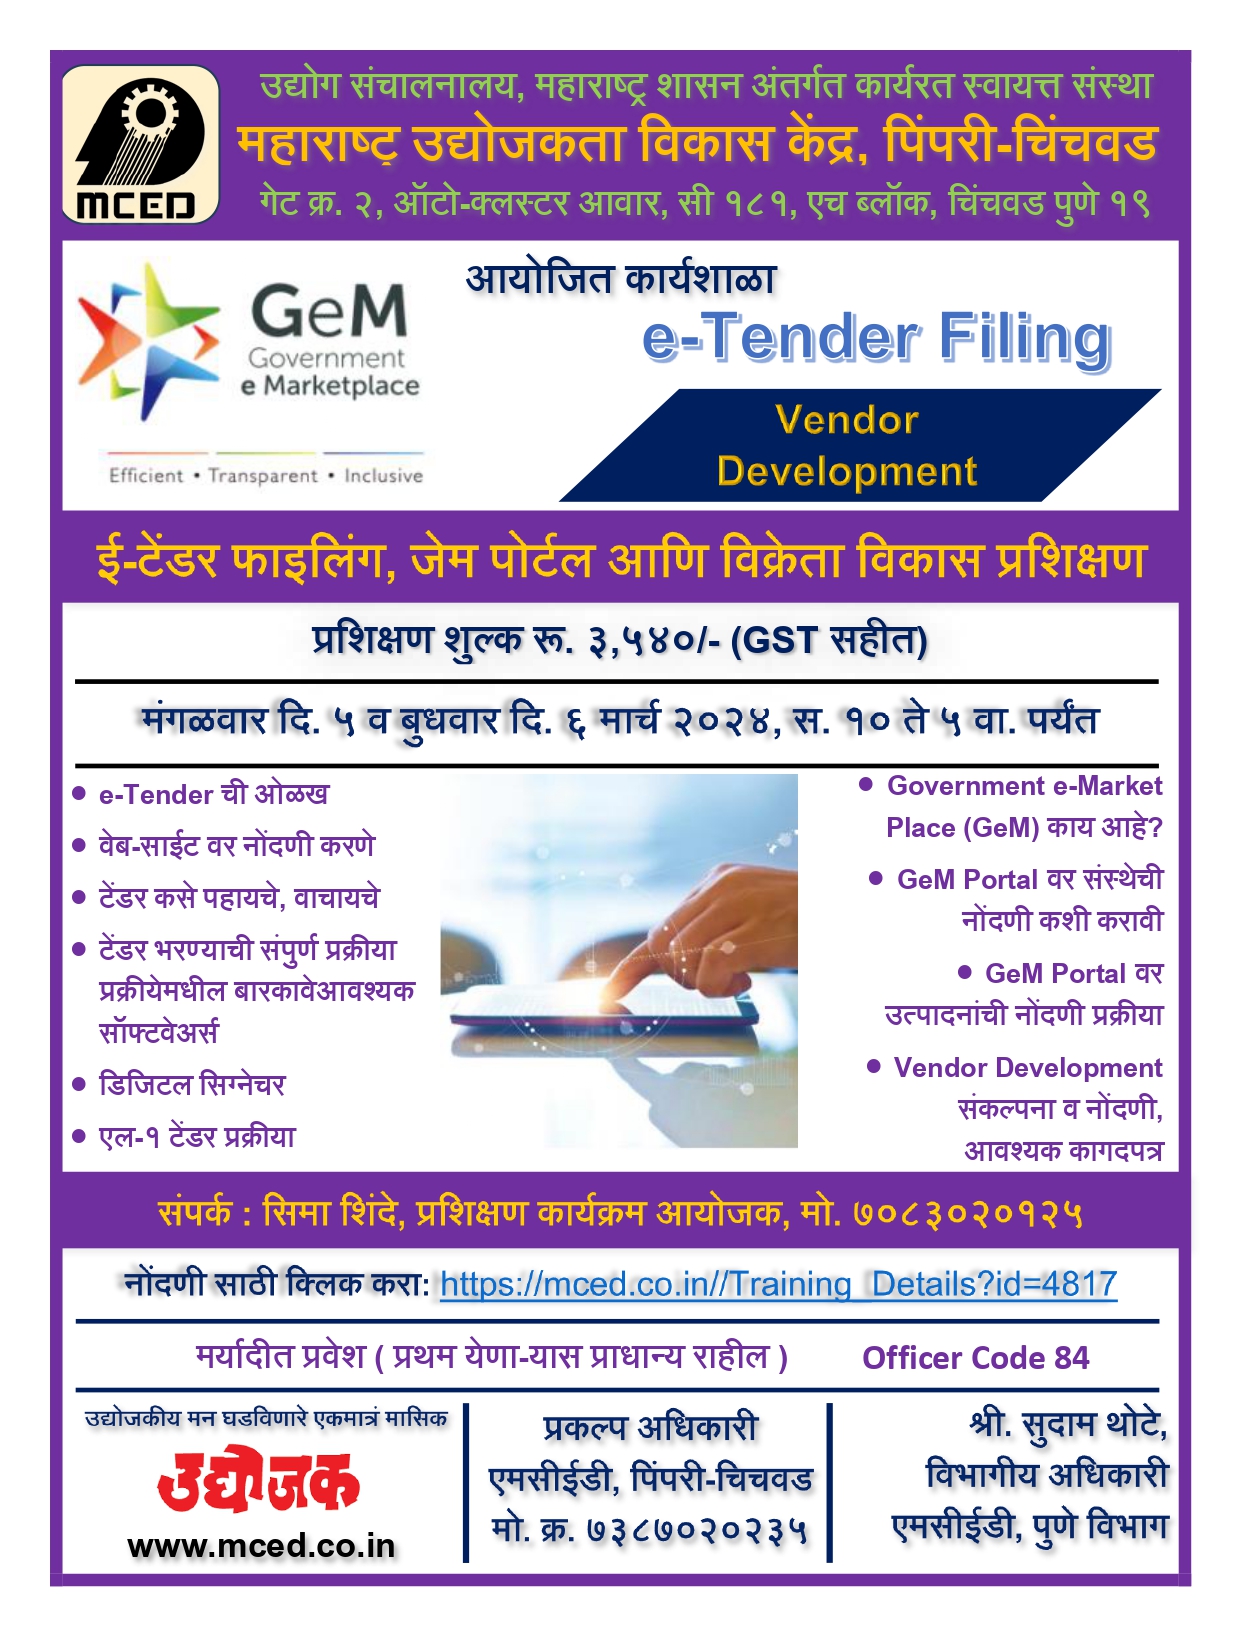 E-Tender Filing, GeM Portal and Vendor Development